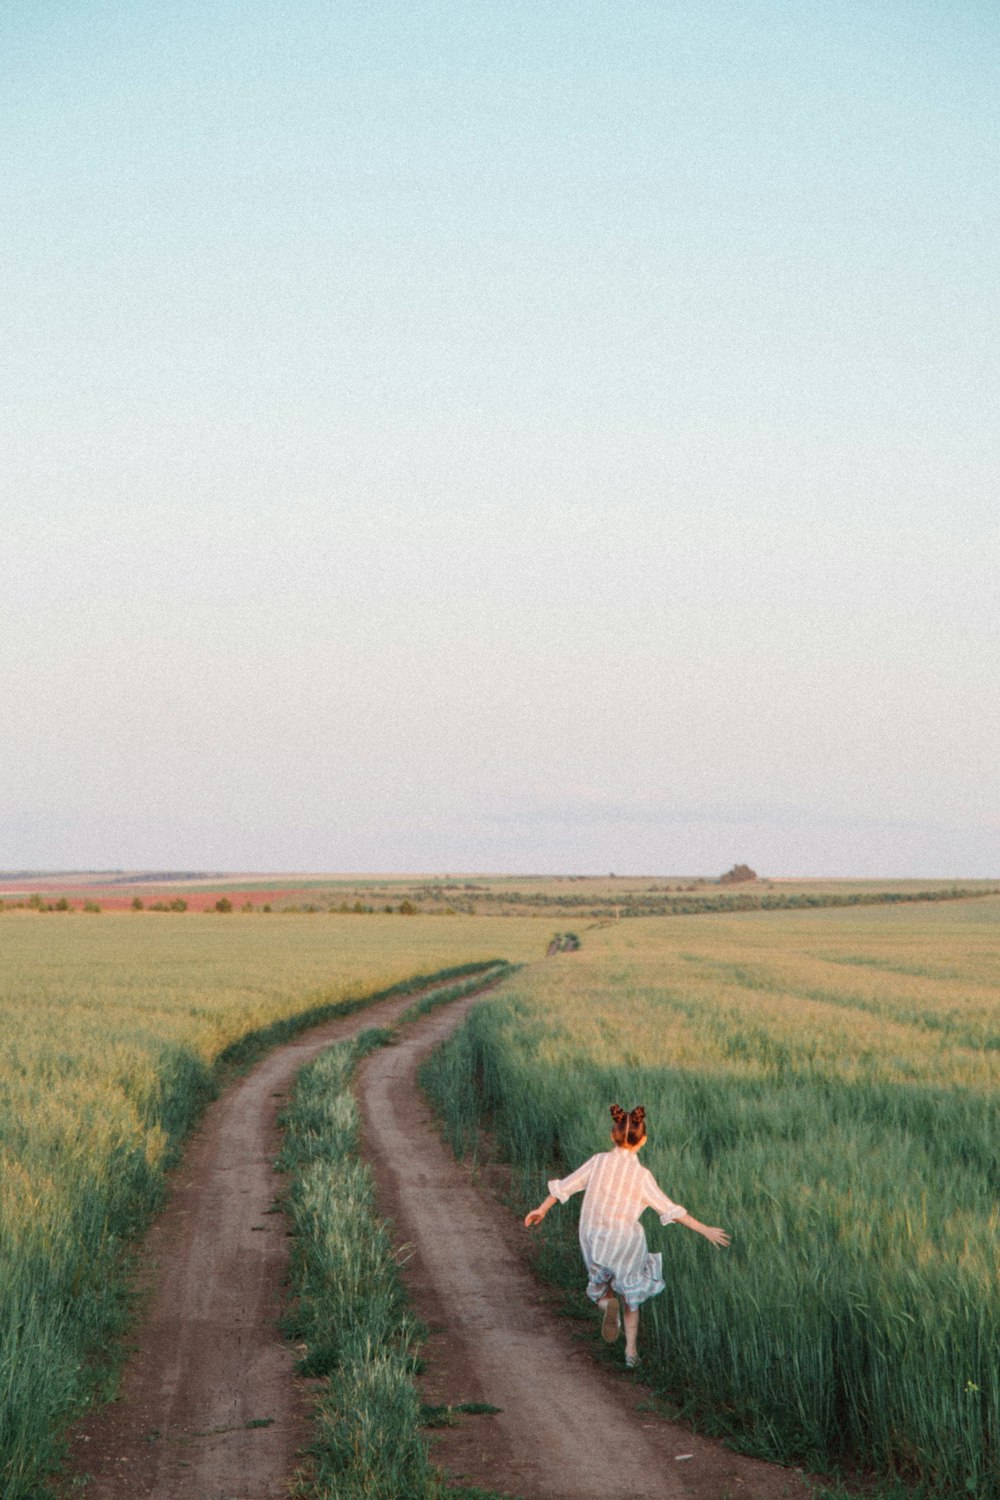 Hombre en camisa de vestir blanca caminando en el camino de tierra marrón entre el campo de hierba verde durante el día